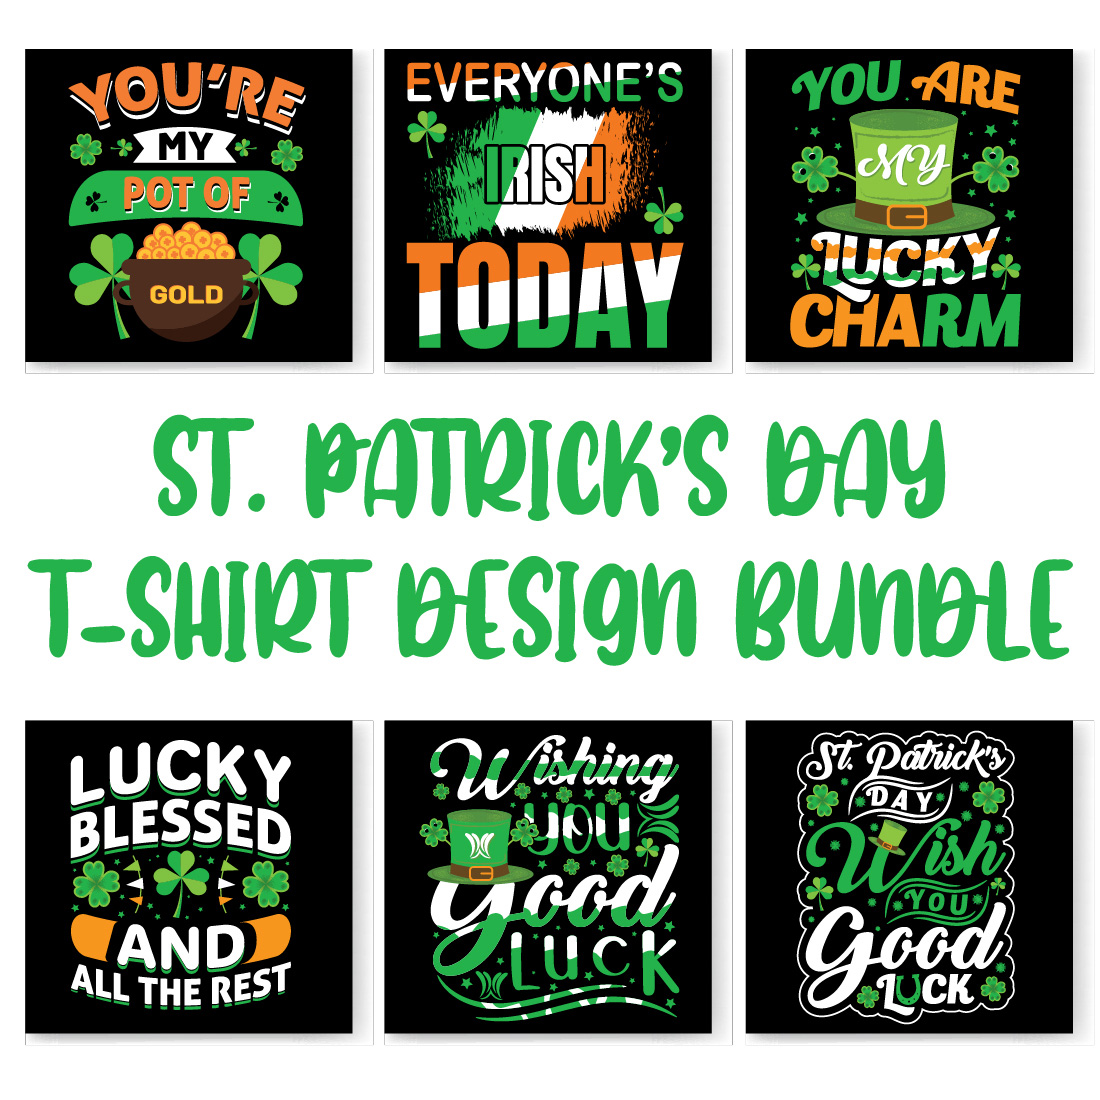 St patrick's day t - shirt design bundle.